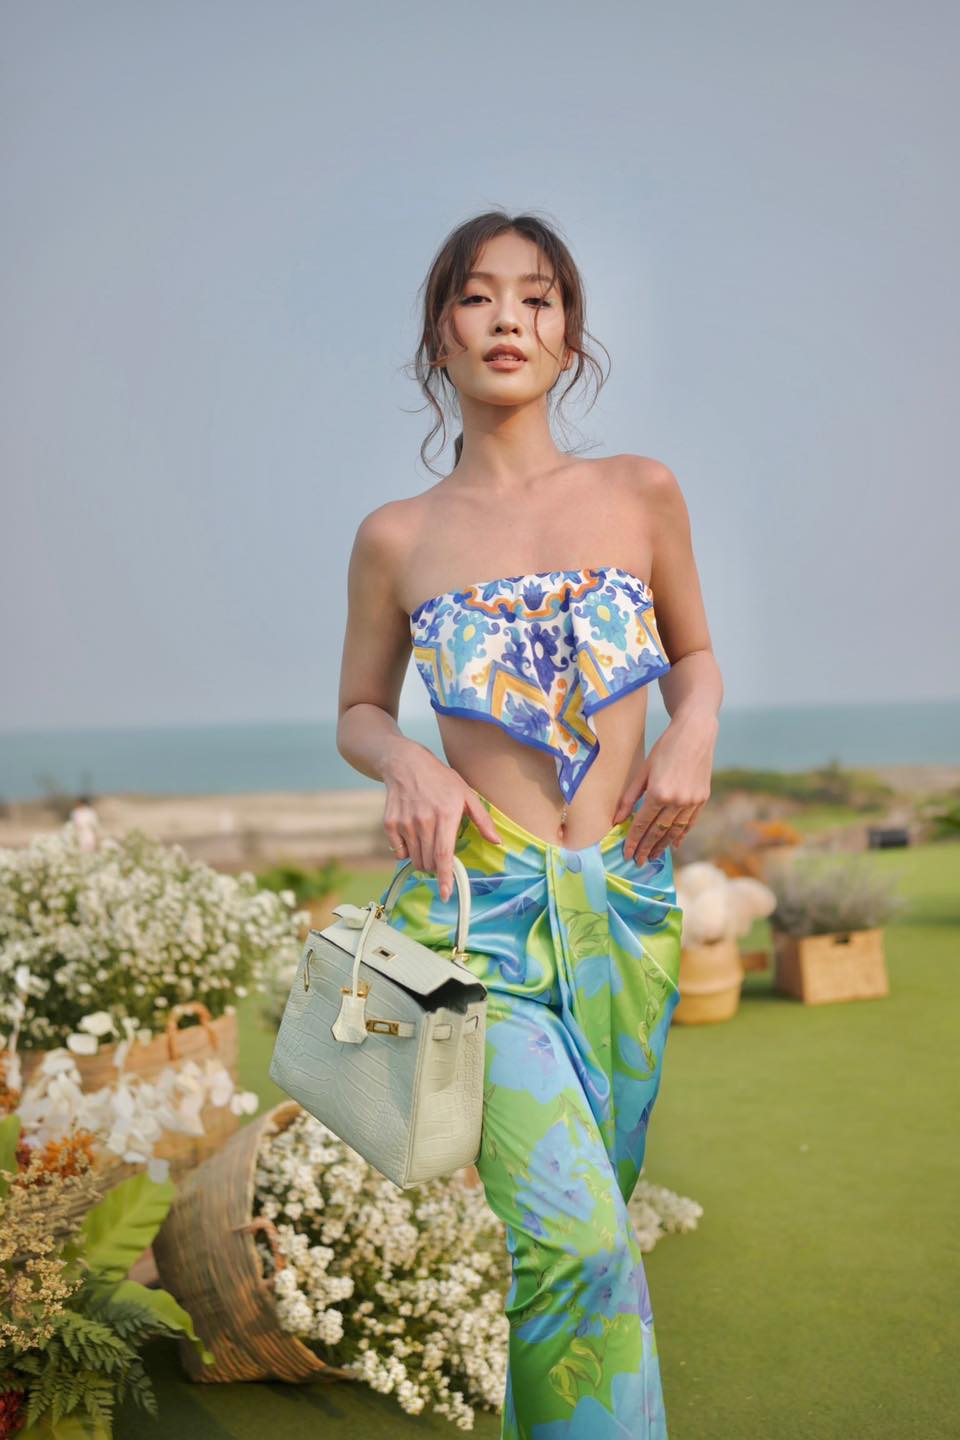 'Vợ' Thanh Sơn gợi ý đồ đi biển: bikini, áo yếm, đầm xẻ khoét sâu khiến fan 'tròn mắt' - Ảnh 2.